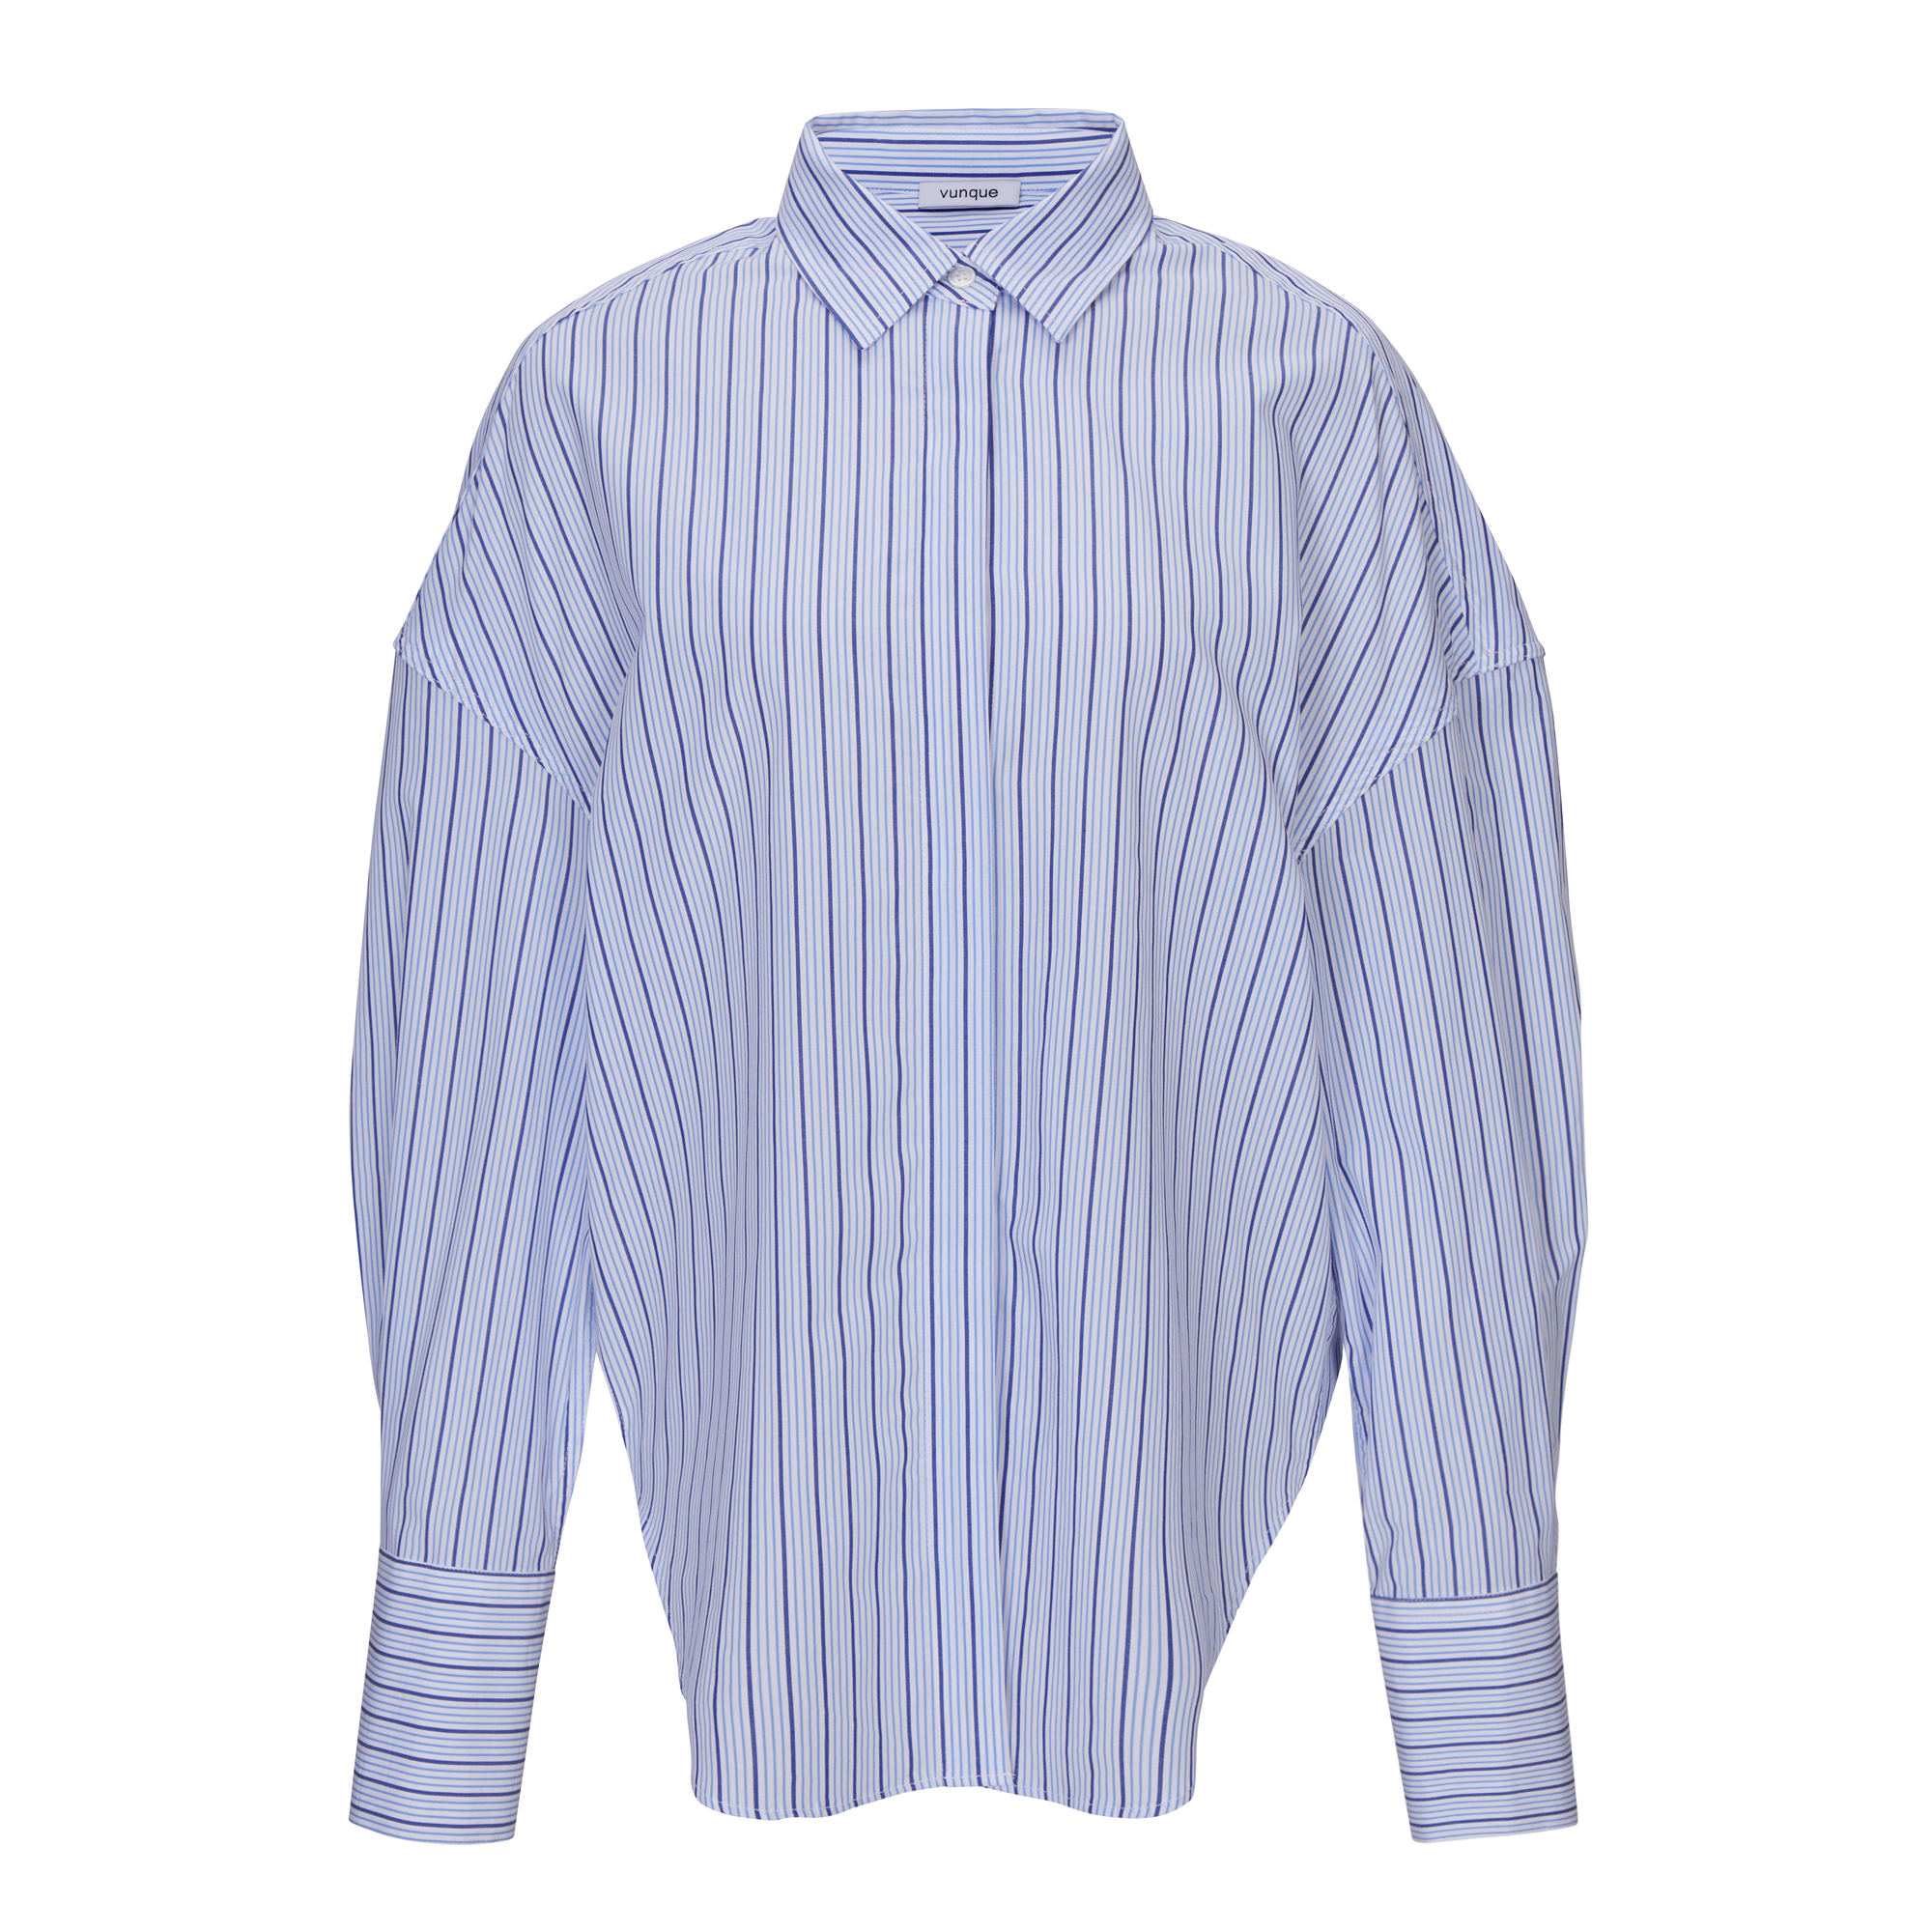 [아울렛] Orbit Angle Shirt (오르빗 앵글 셔츠) Blue